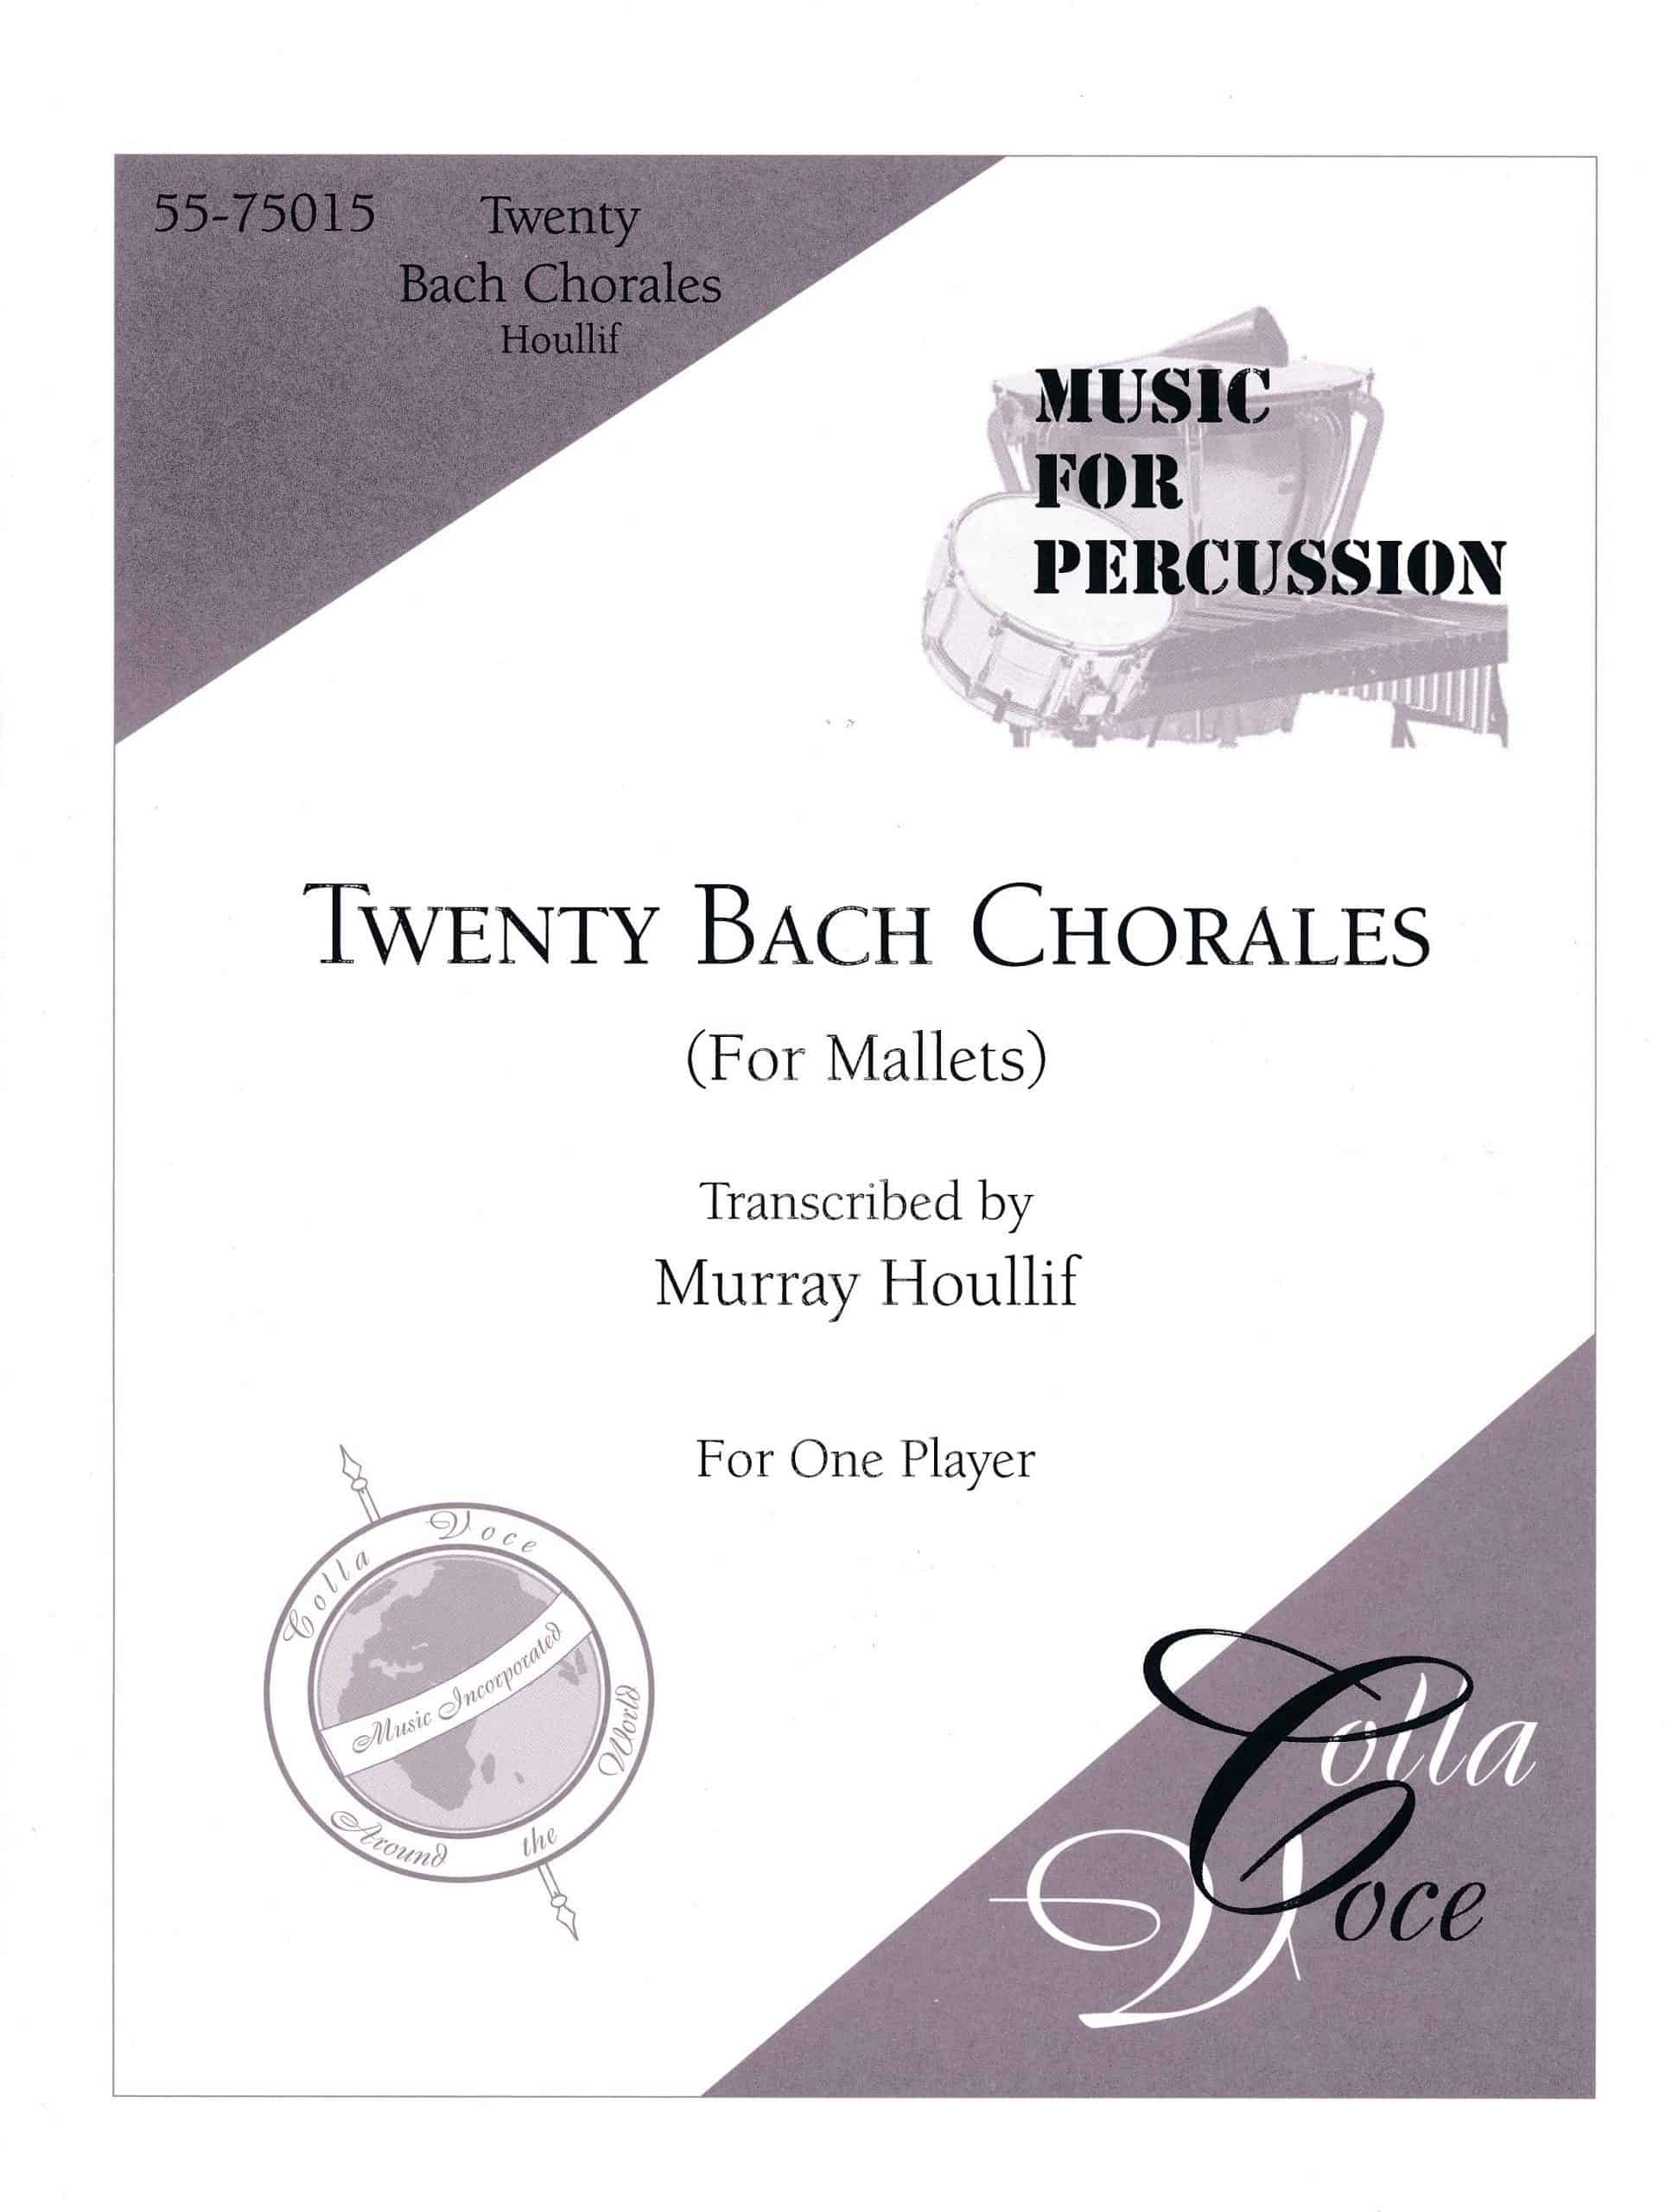 Twenty Bach Chorales by Bach arr. Murray Houllif